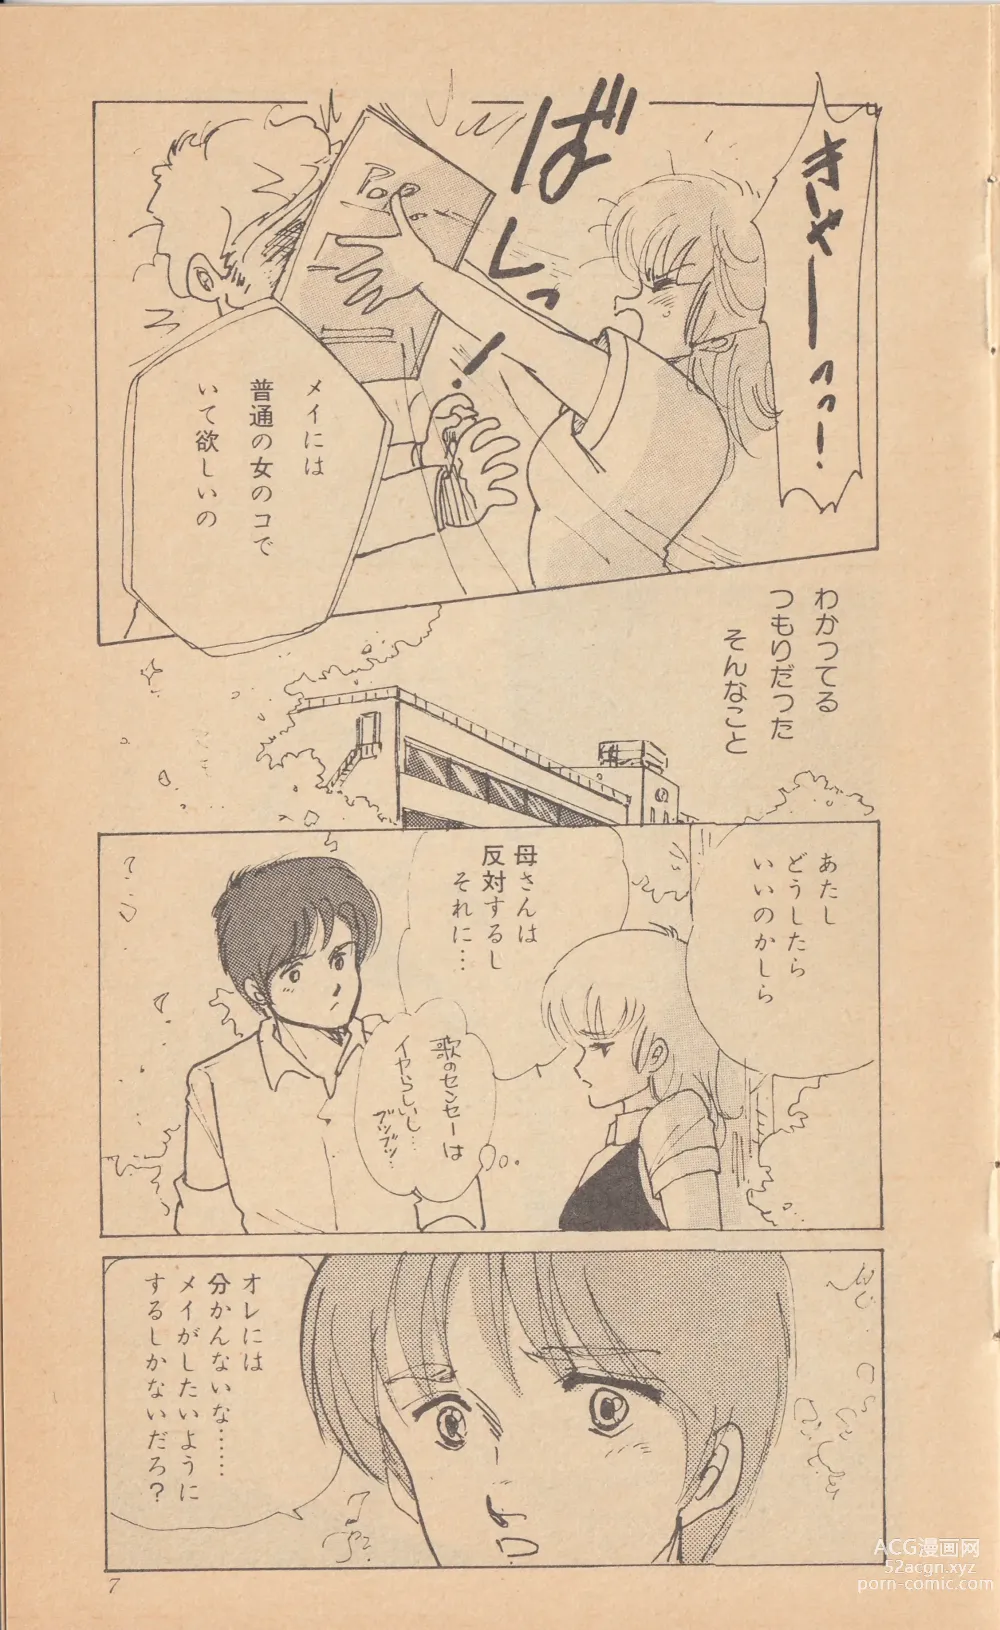 Page 9 of doujinshi Shining May Image Storybook